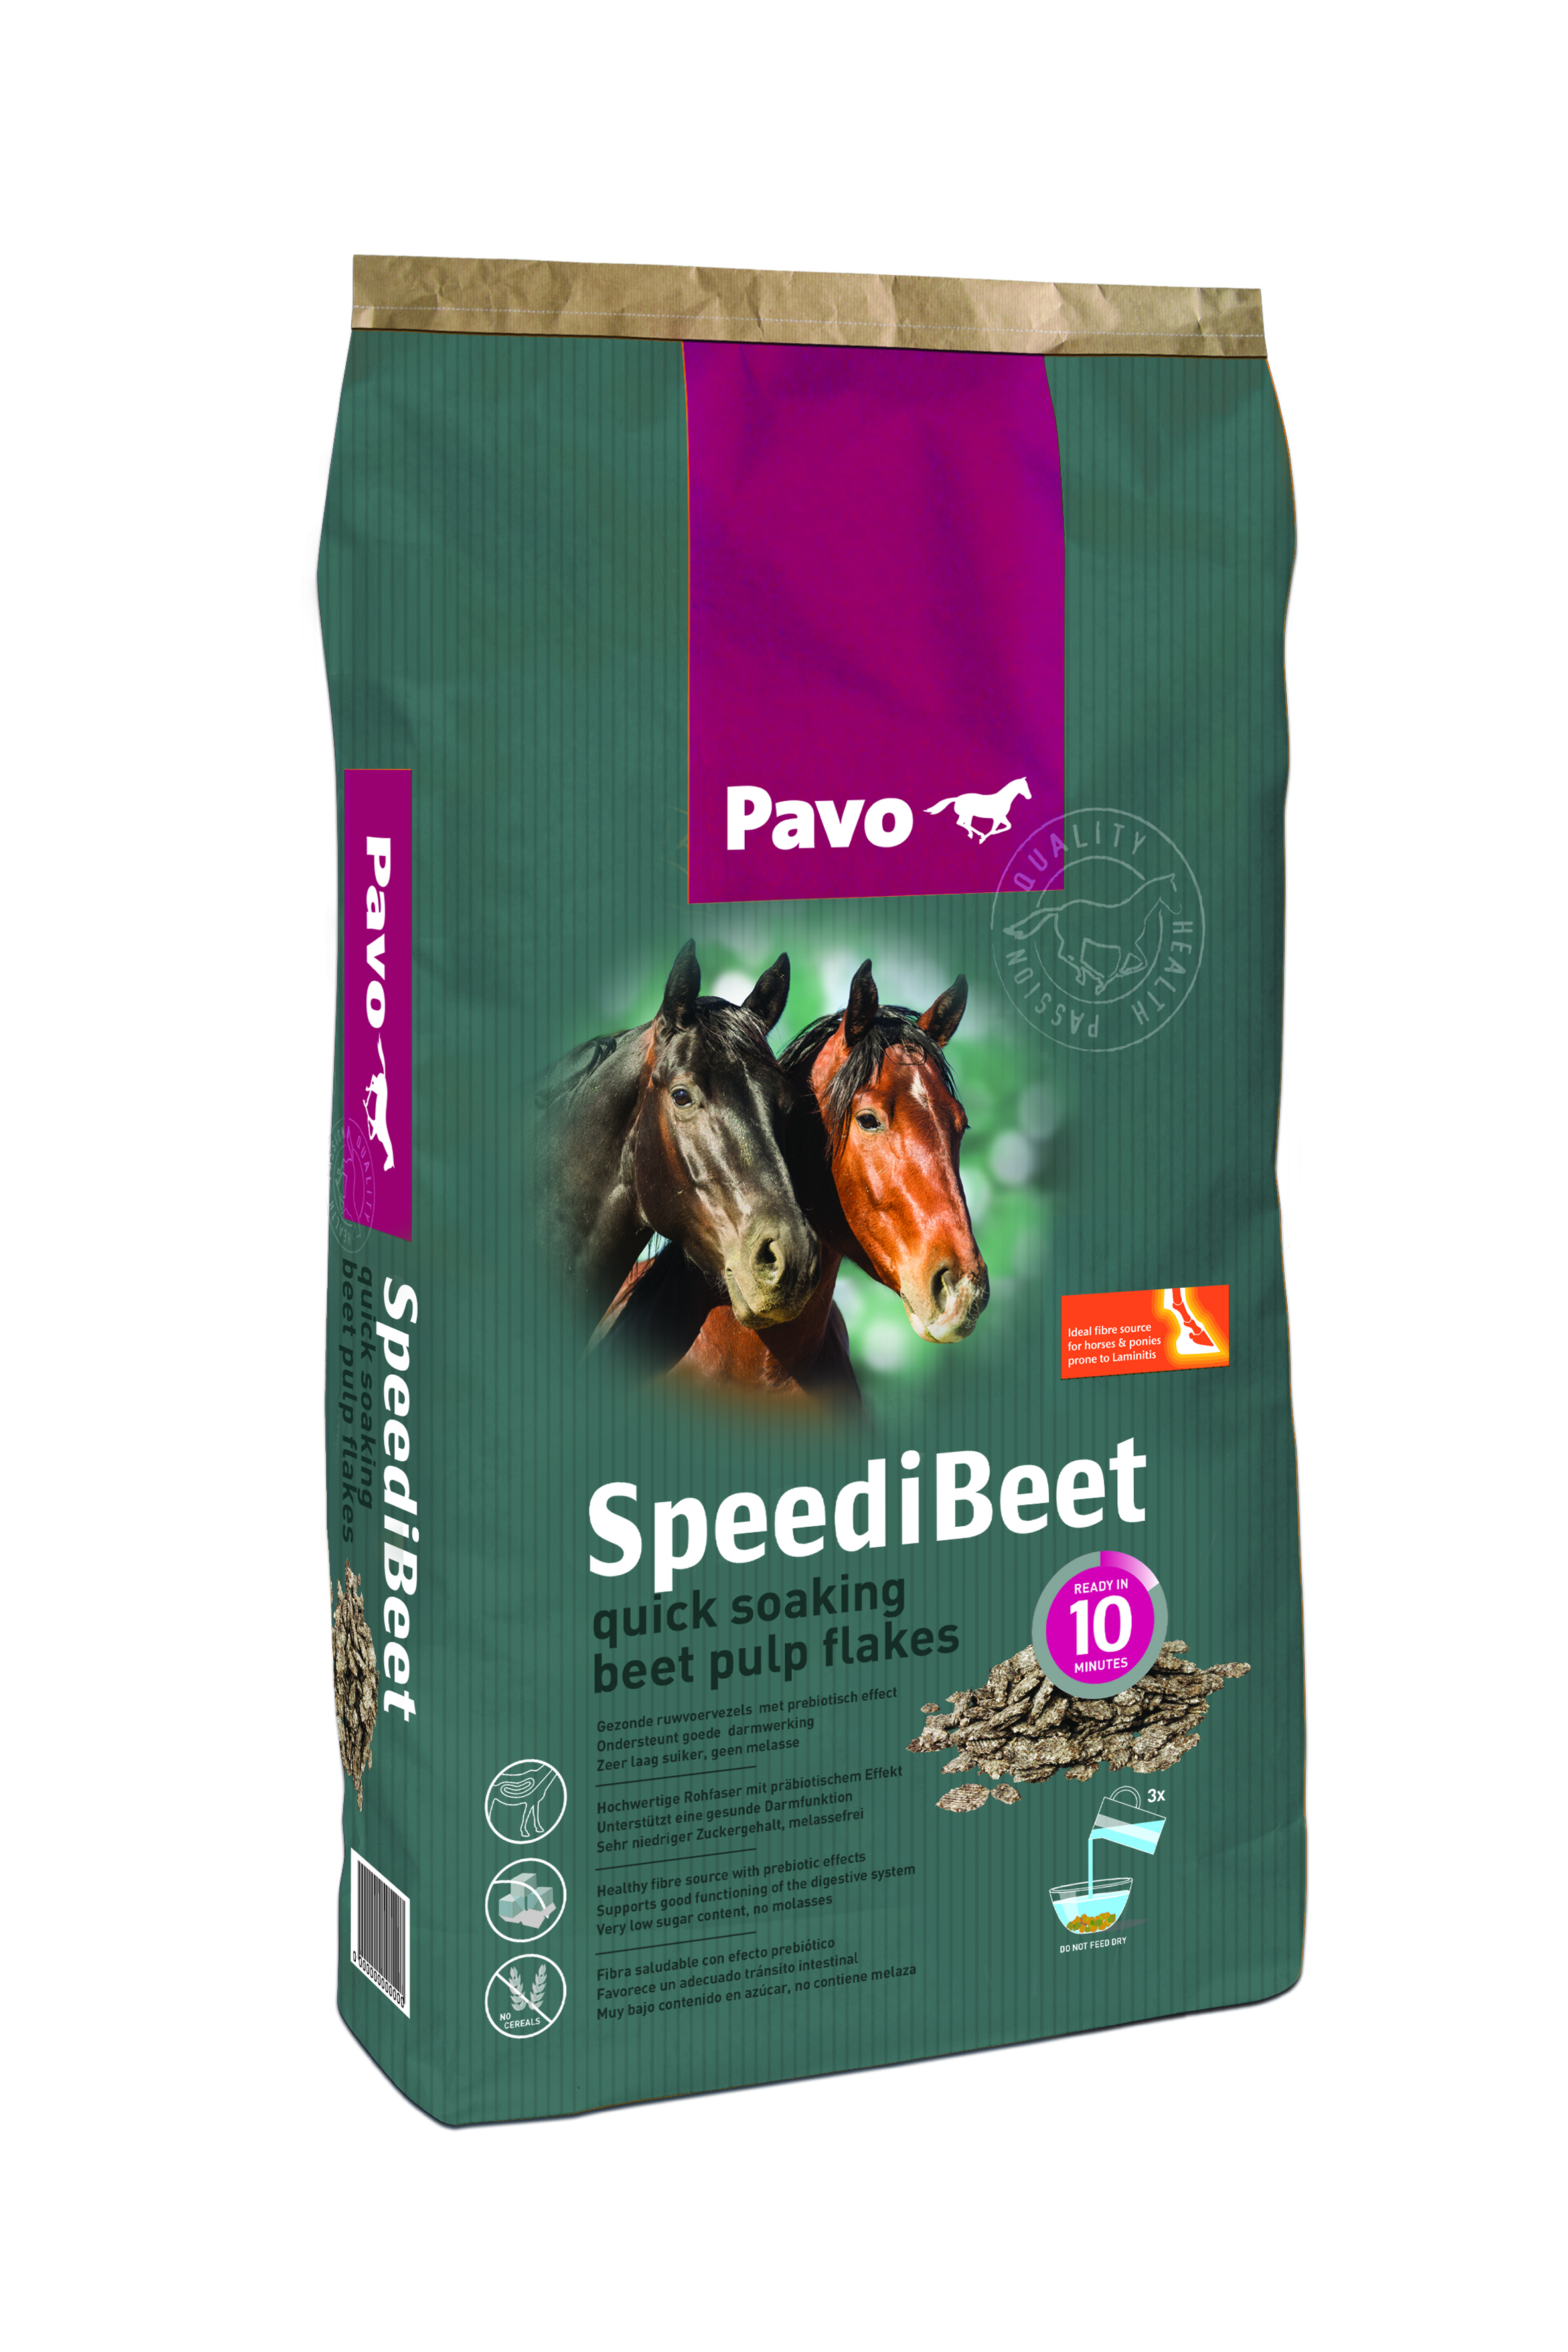 Pavo - SpeediBeet - Melassefreie Zuckerrübenschnitzel für eine gesunde Darmfunktion